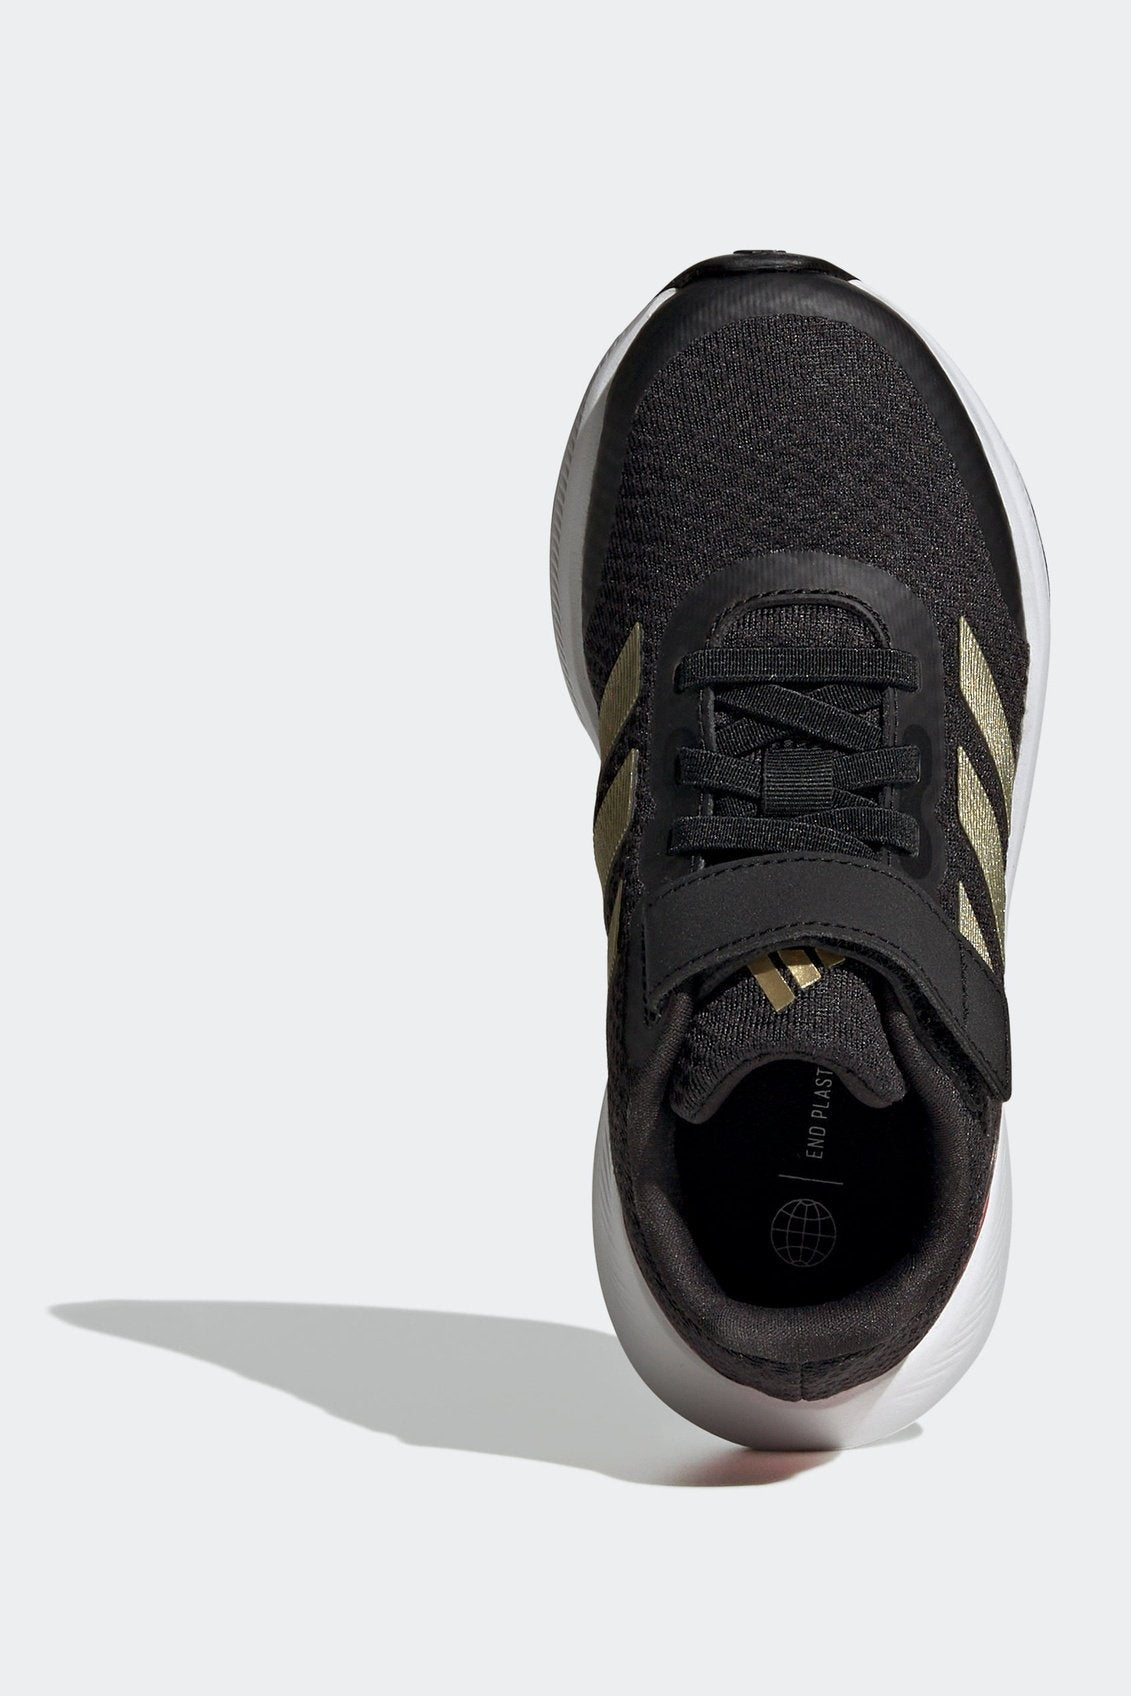 ADIDAS - נעלי ספורט לילדים RUNFALCON 3.0 בצבע שחור וזהב - MASHBIR//365